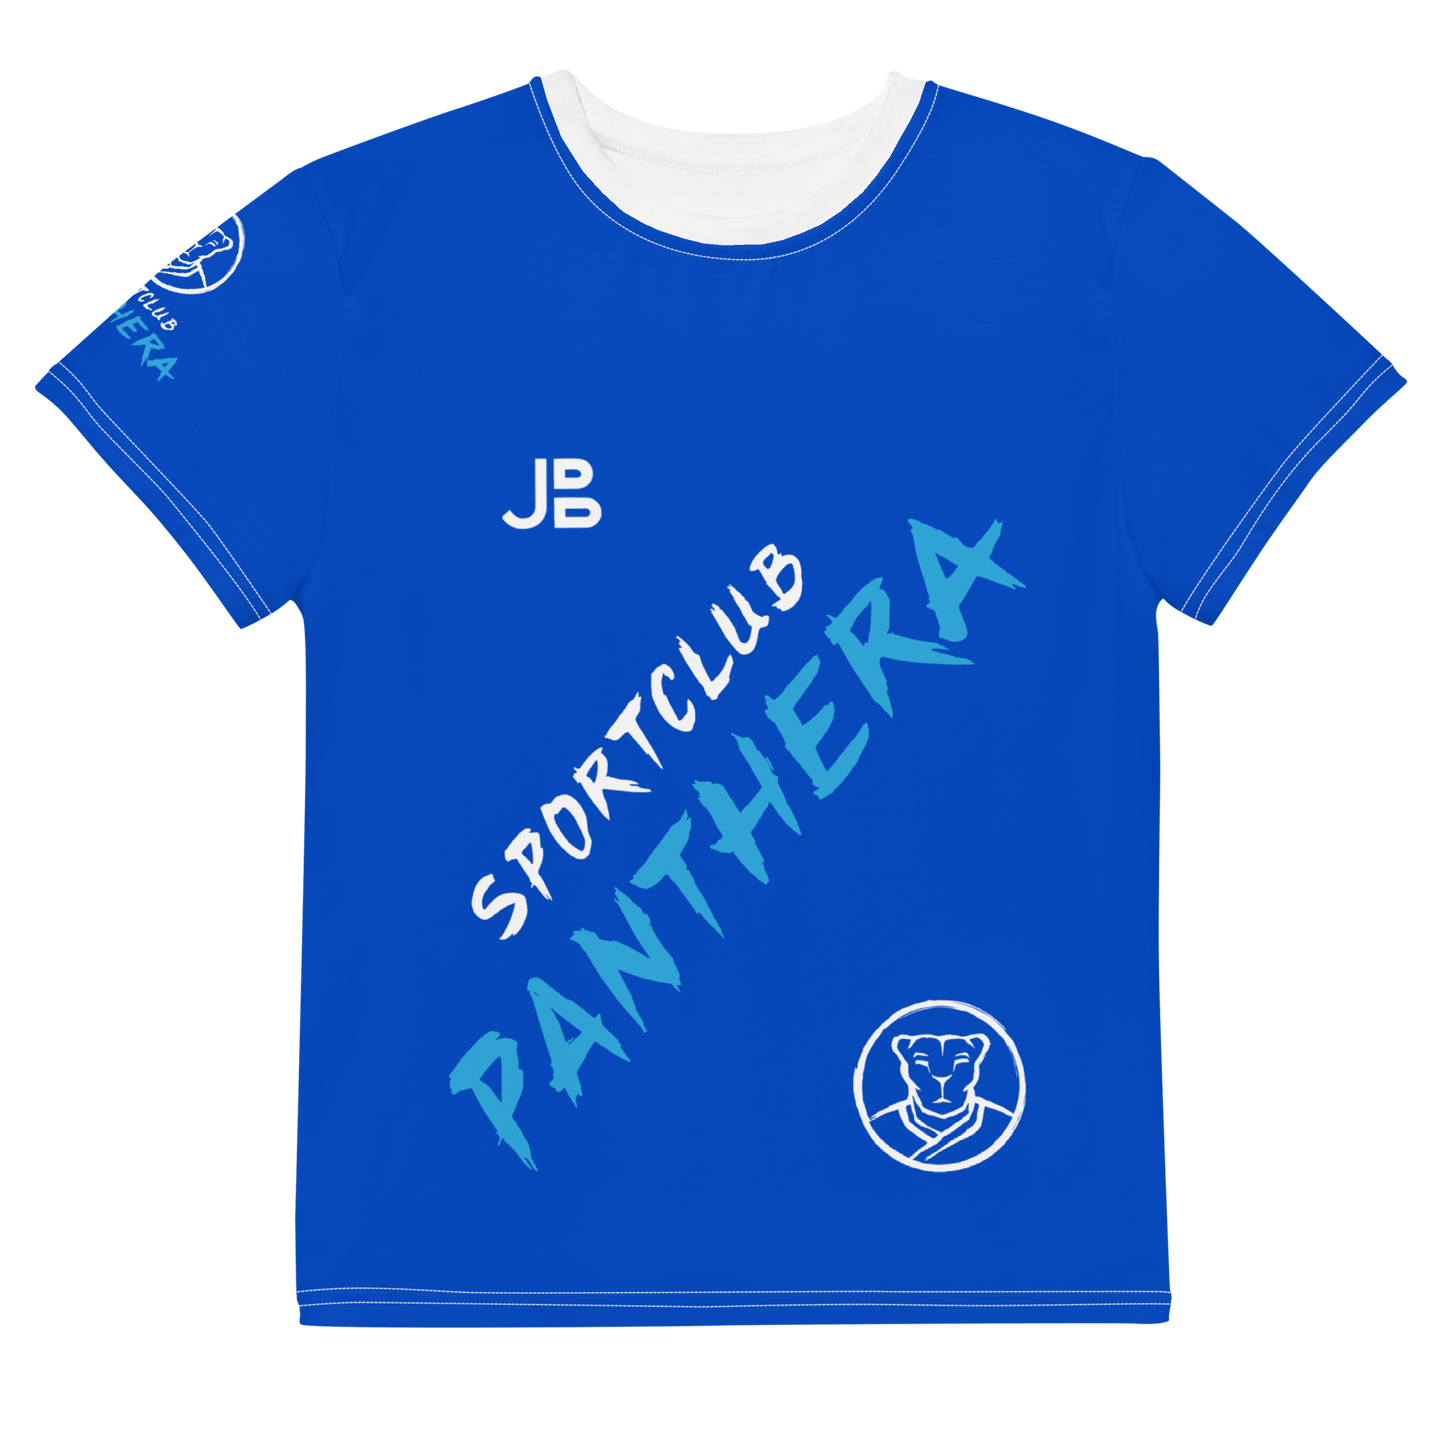 SPORTCLUB PANTHERA - Jersey-Shirt Youth Tanzen